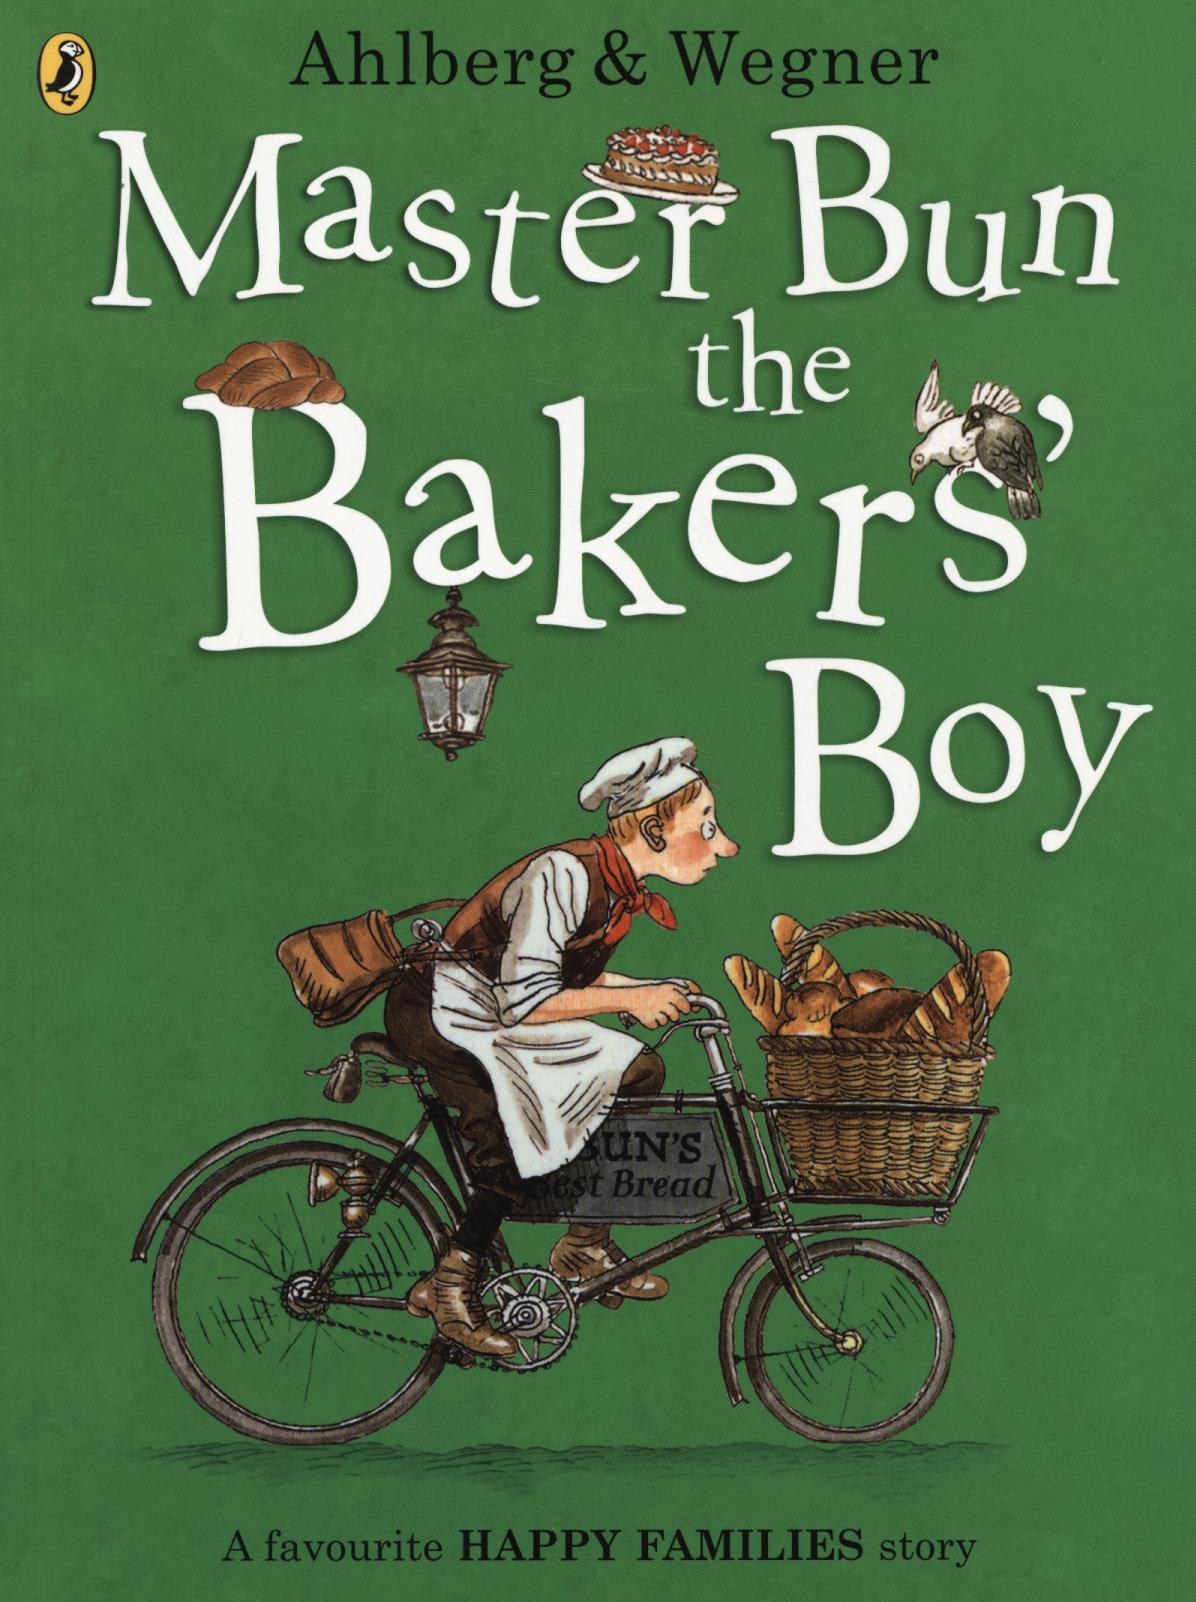 Master Bun the Bakers' Boy